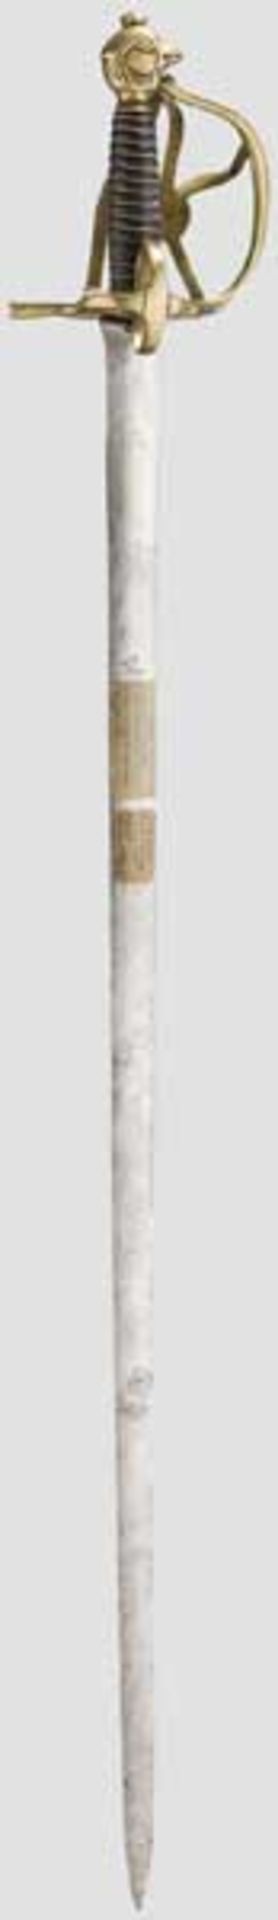 Dragonerdegen M 1734 Schlanke, spitz zulaufende Klinge mit linsenförmigem Querschnitt, quartseitig - Bild 2 aus 3